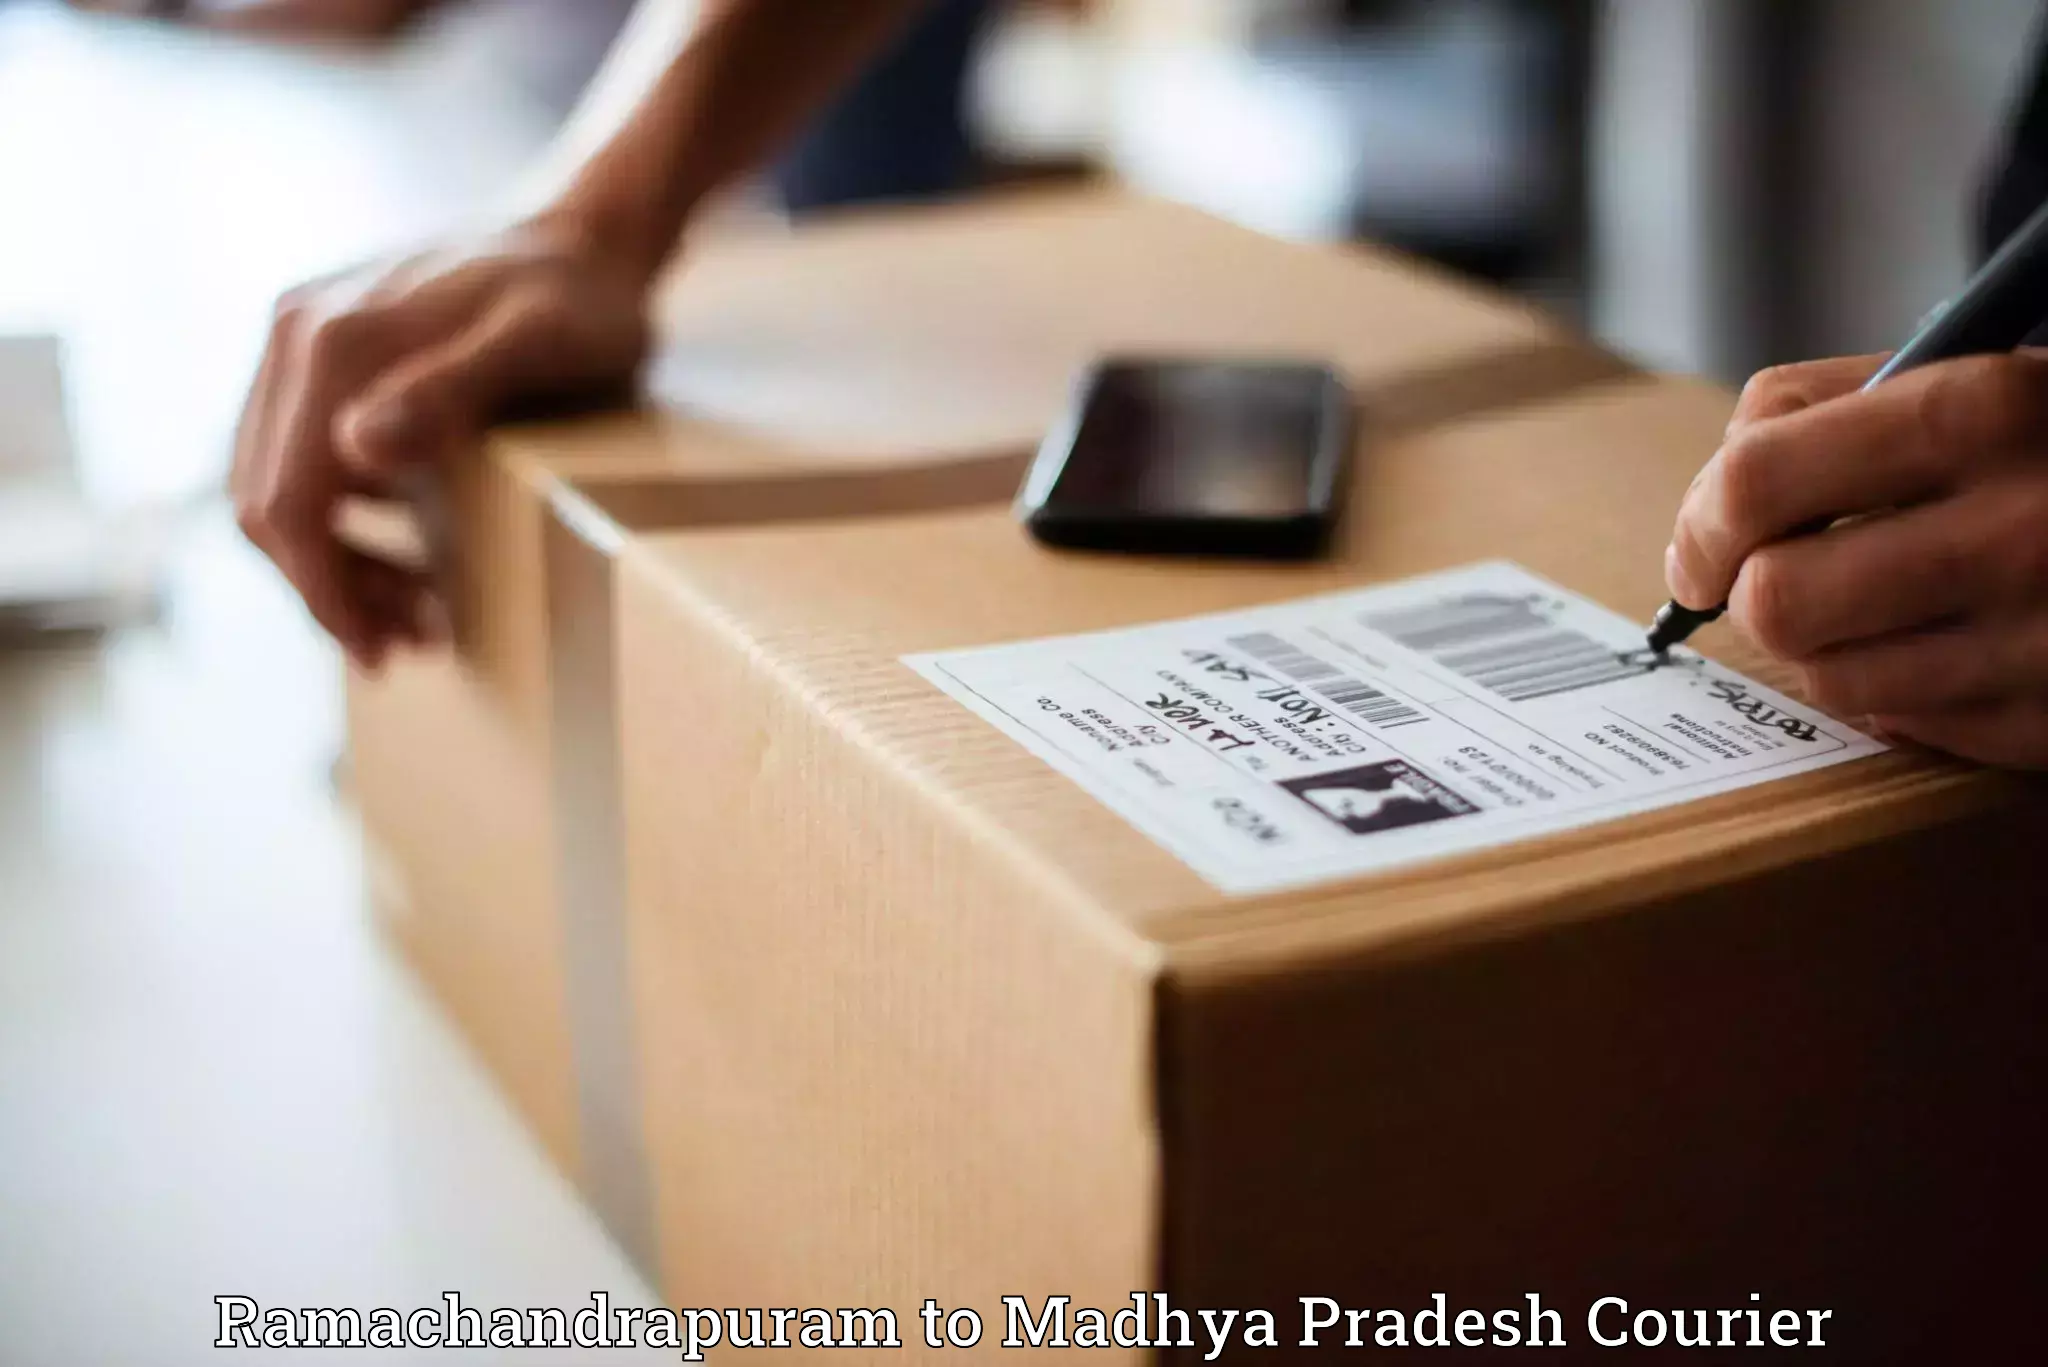 Custom courier packaging in Ramachandrapuram to Chitrangi